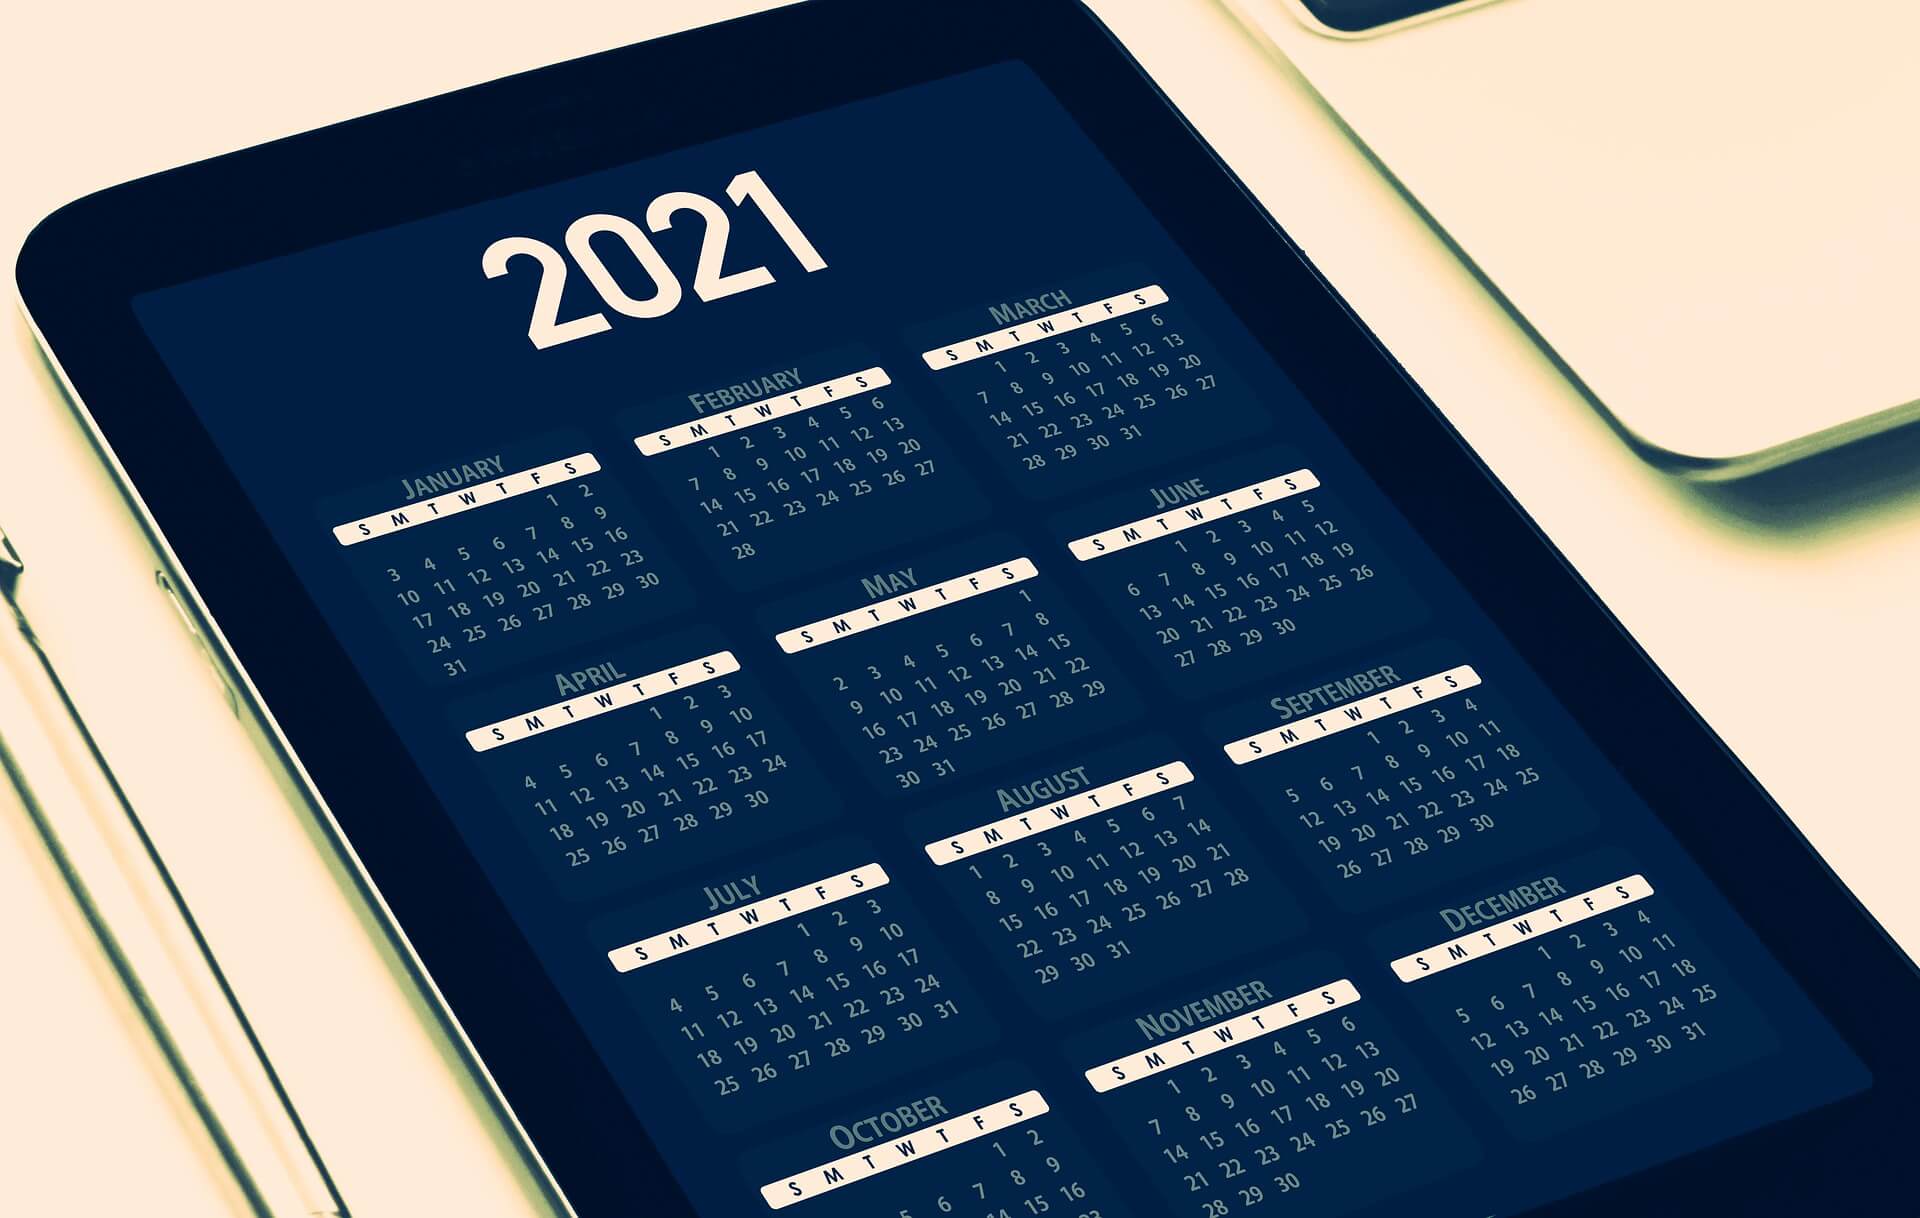 2021 calendar on cell phone